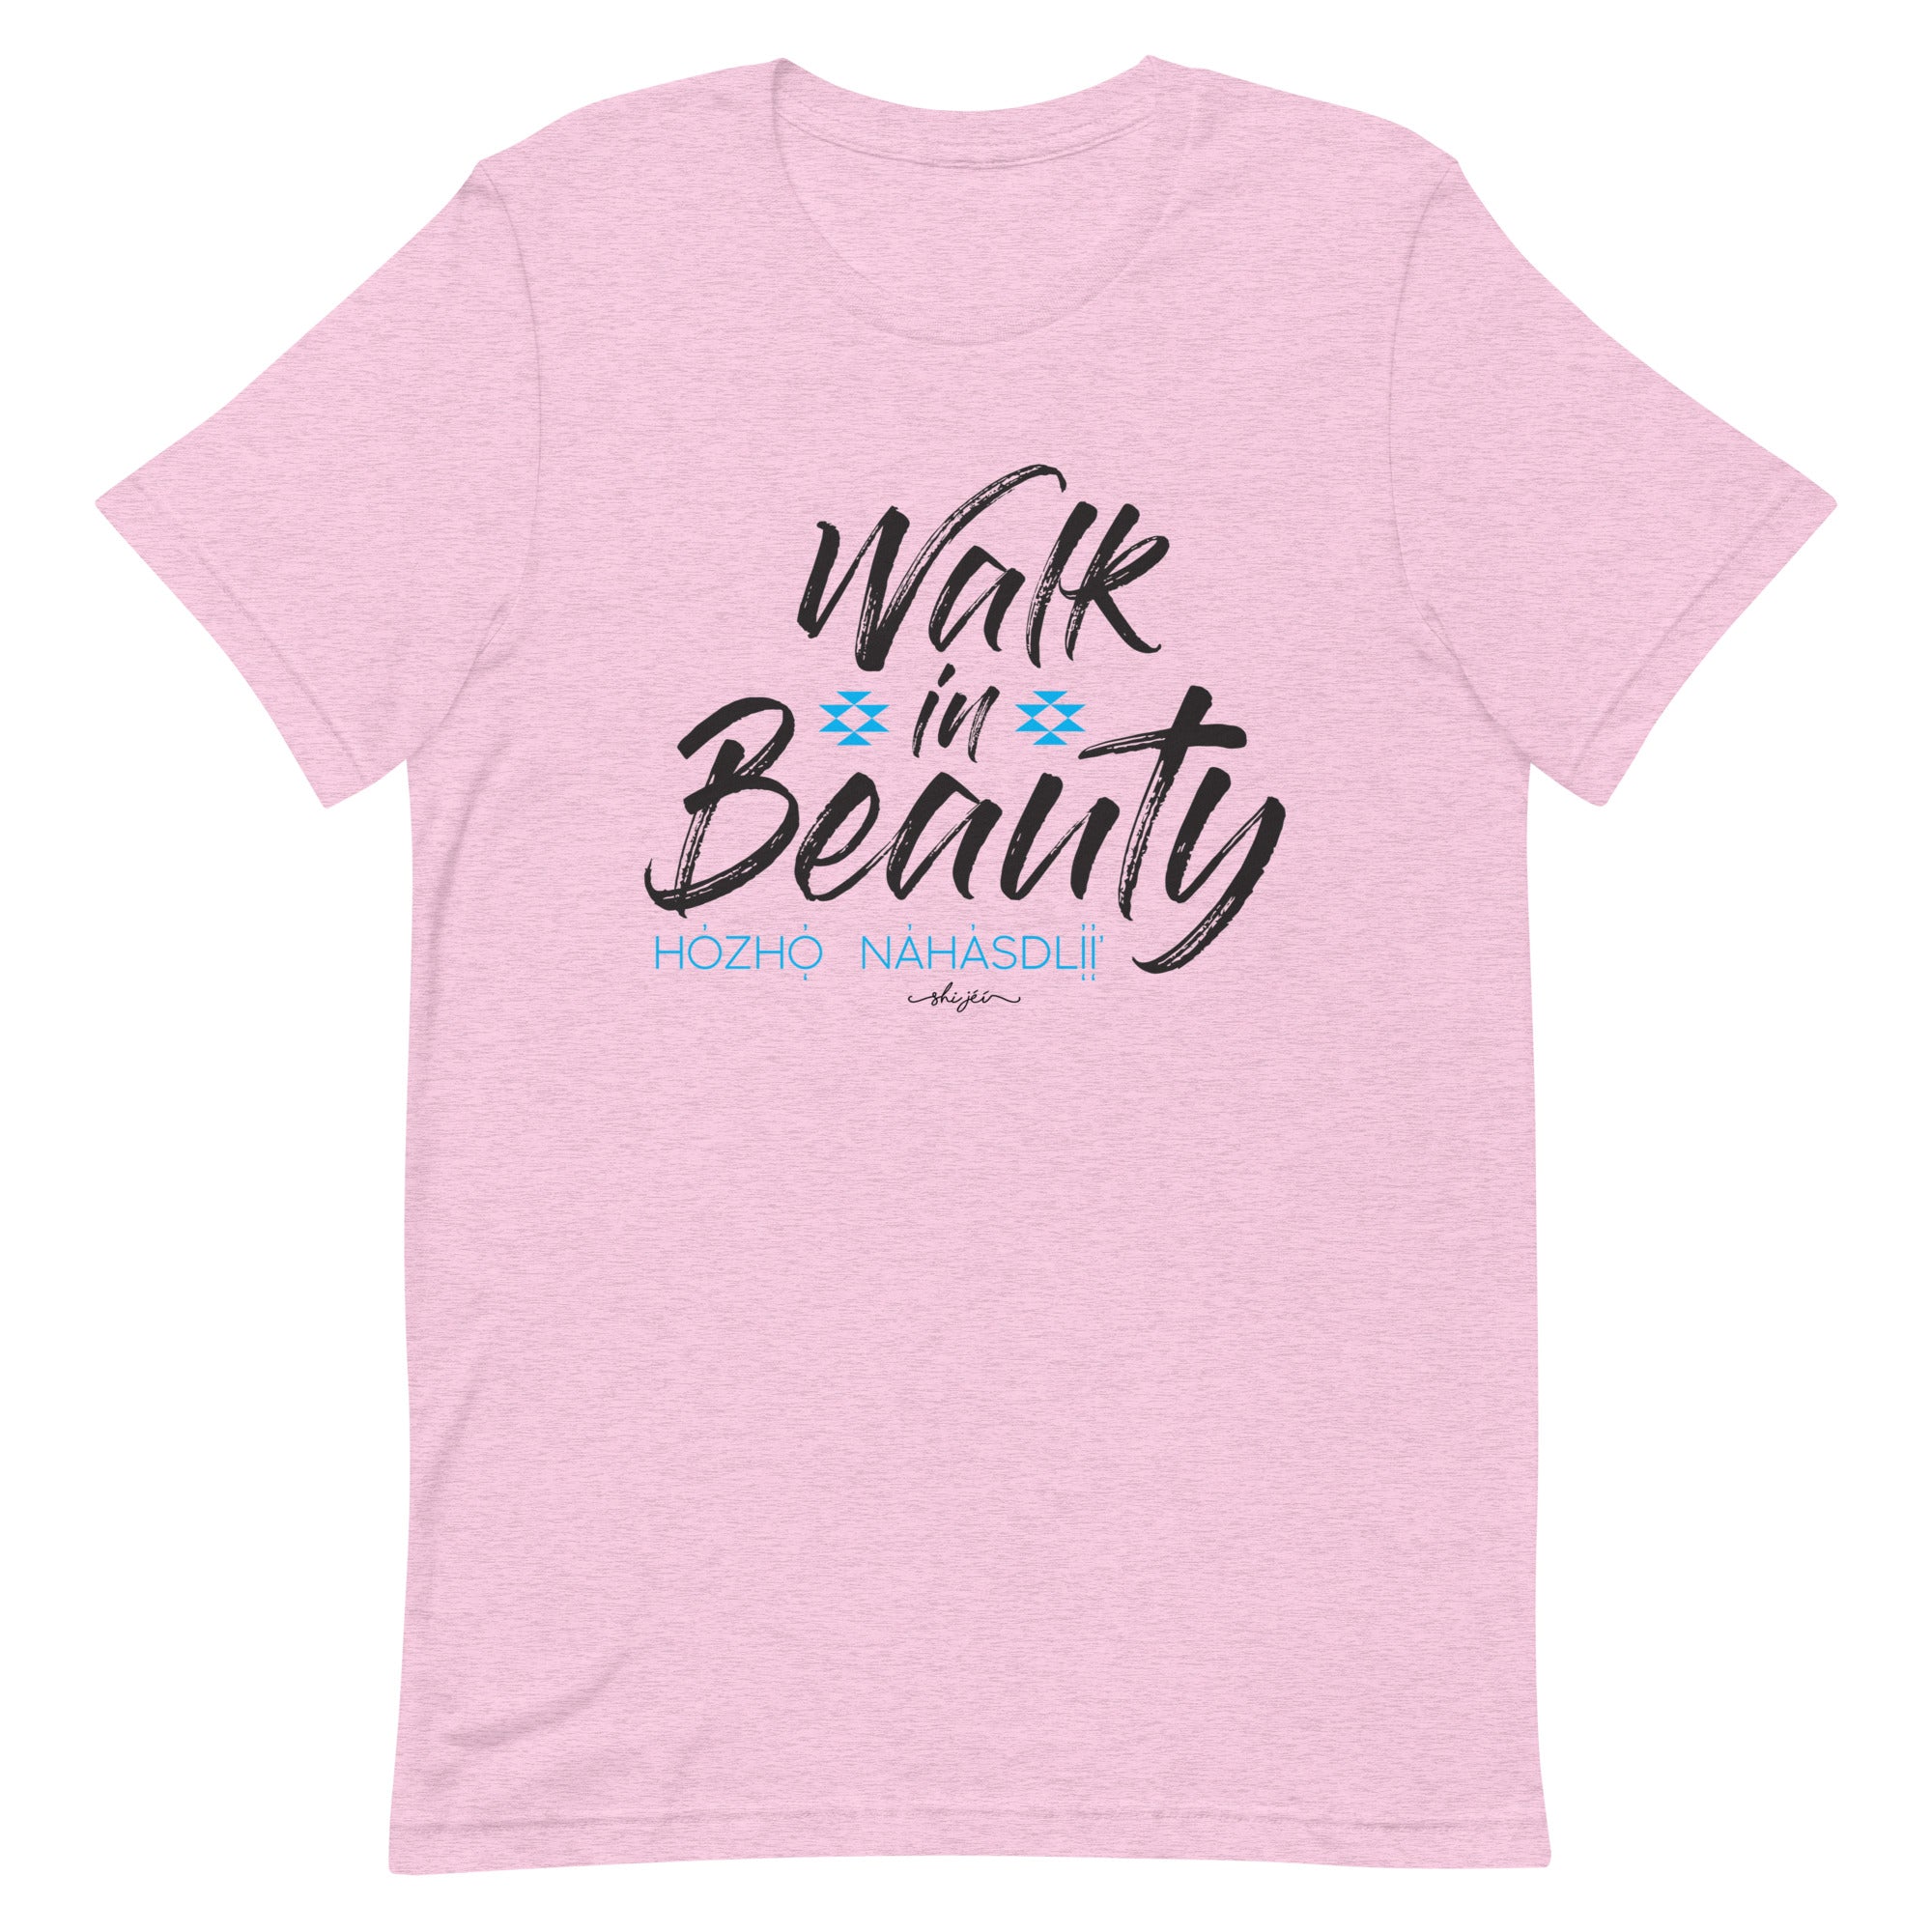 Walk in Beauty Tee